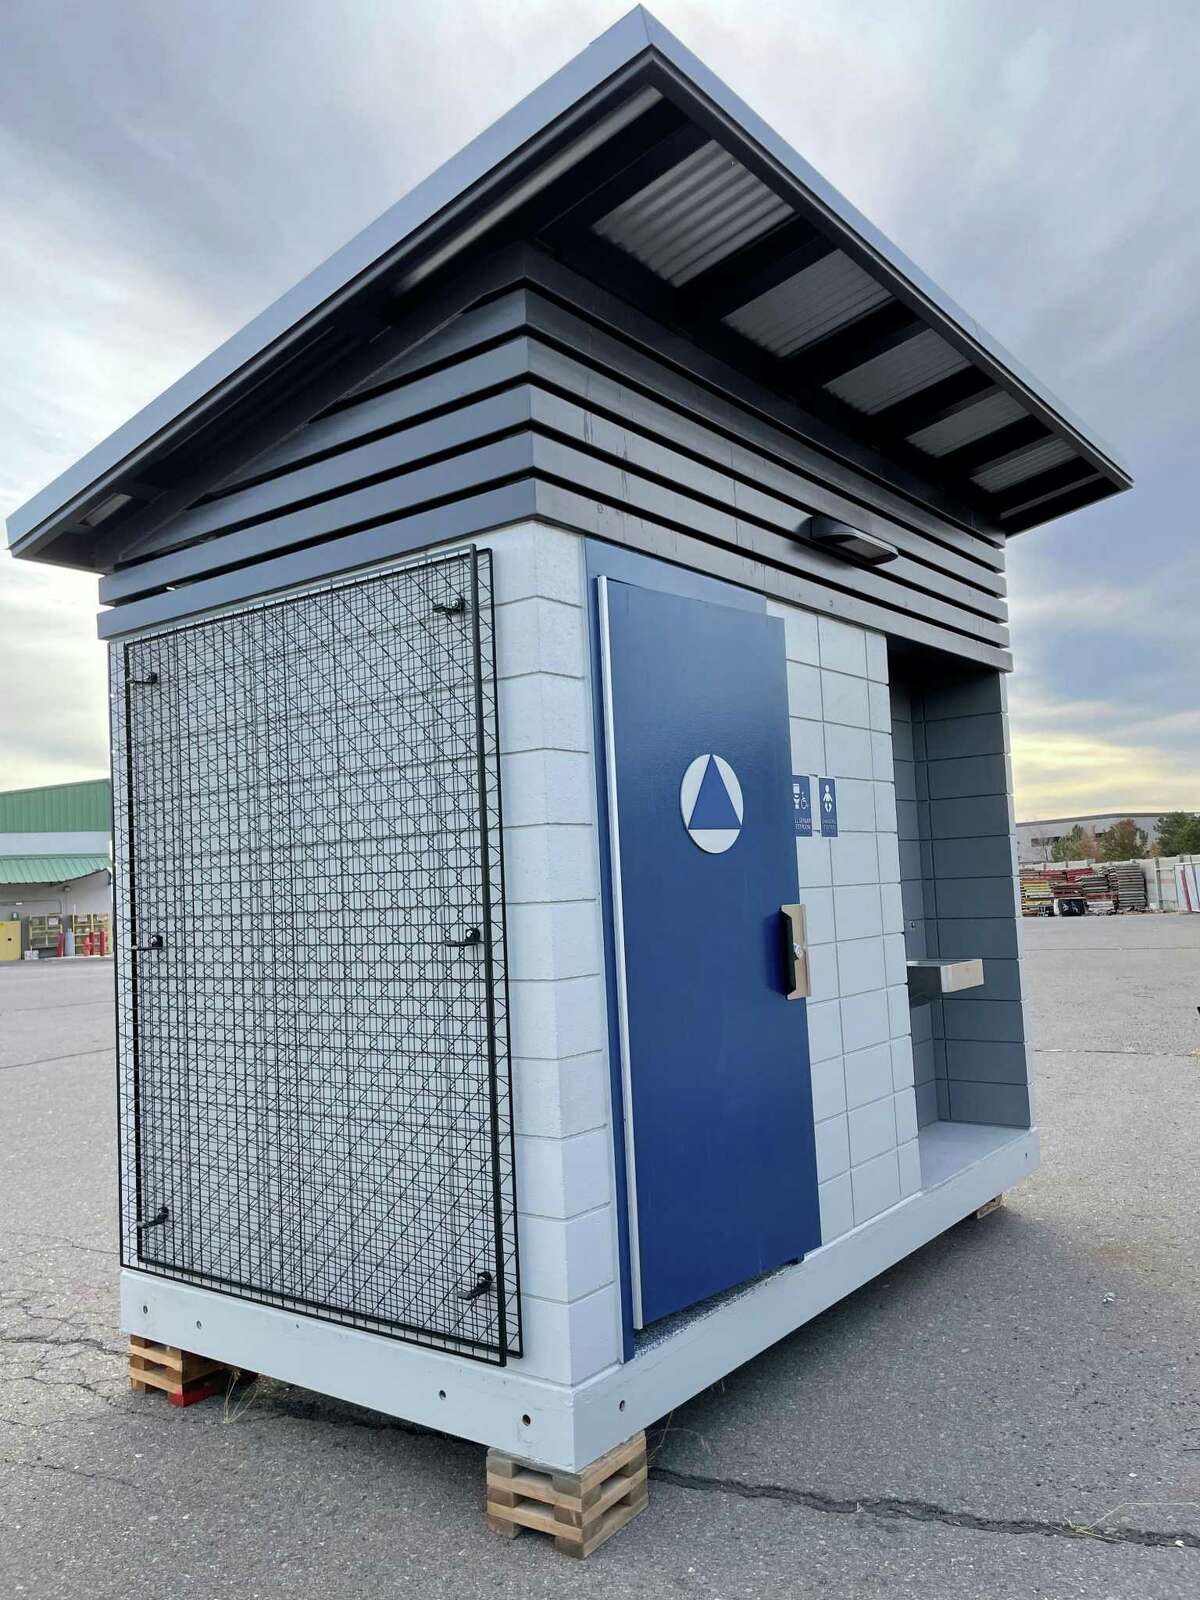 公共厕所公司(Public Restroom Co.)将为诺埃谷镇广场(Noe Valley Town Square)提供一间浴室，但该厕所必须经过旧金山六部门的审批程序。